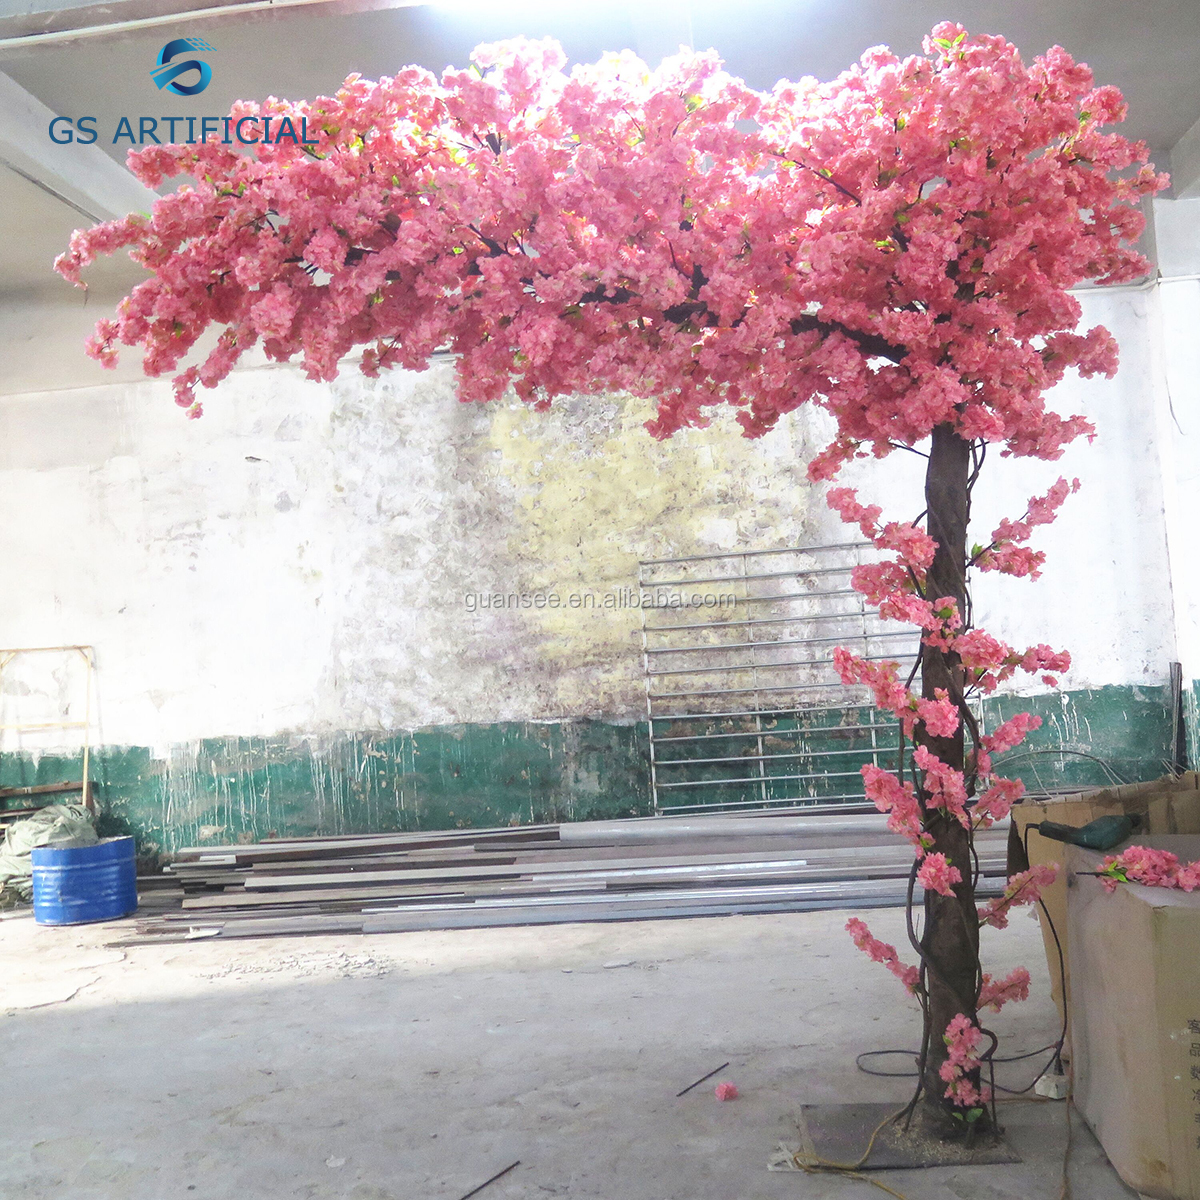  Vente chaude de haute qualité Arche artificielle de fleurs de cerisier pour la décoration 